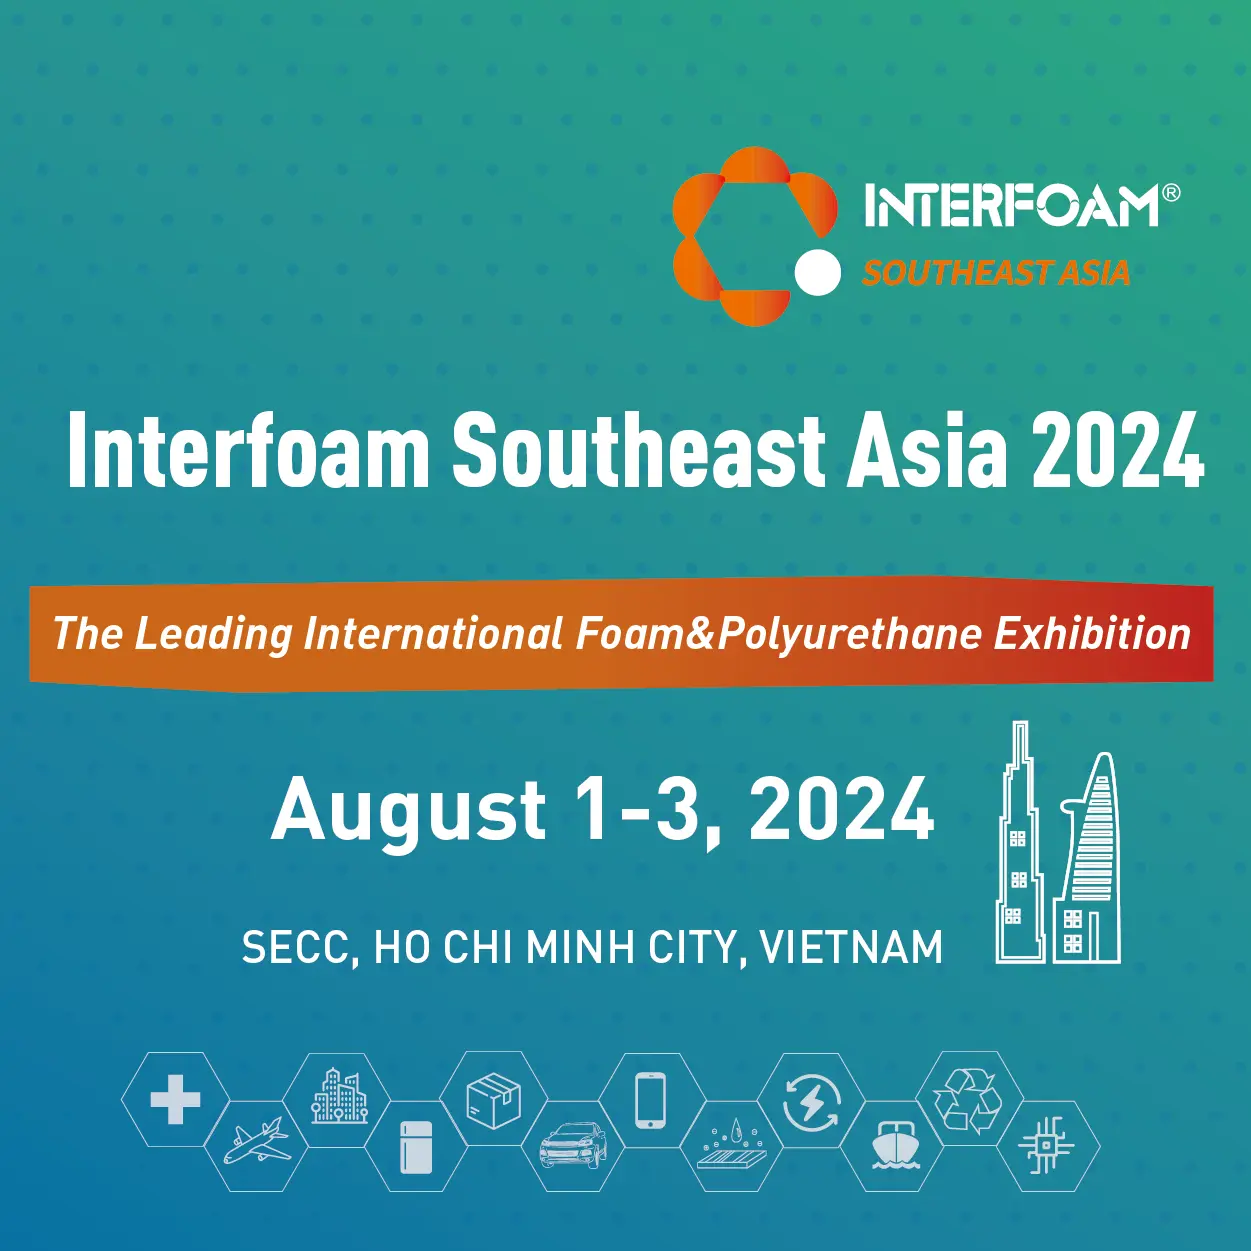 Interfoam Southeast Asia 2024